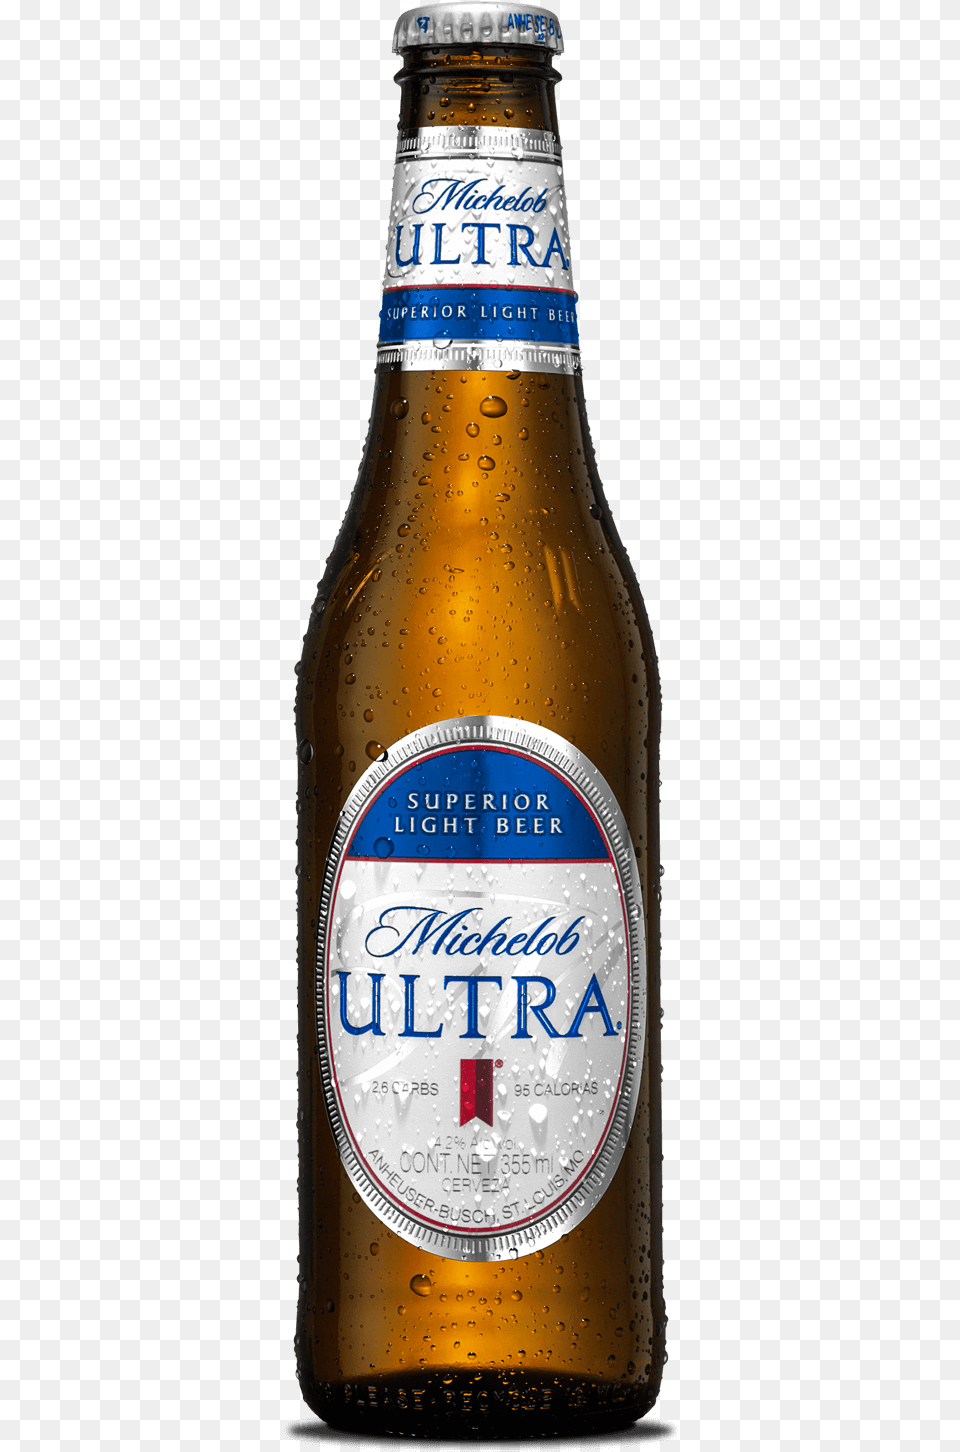 Michelob Ultra, Alcohol, Beer, Beer Bottle, Beverage Free Transparent Png